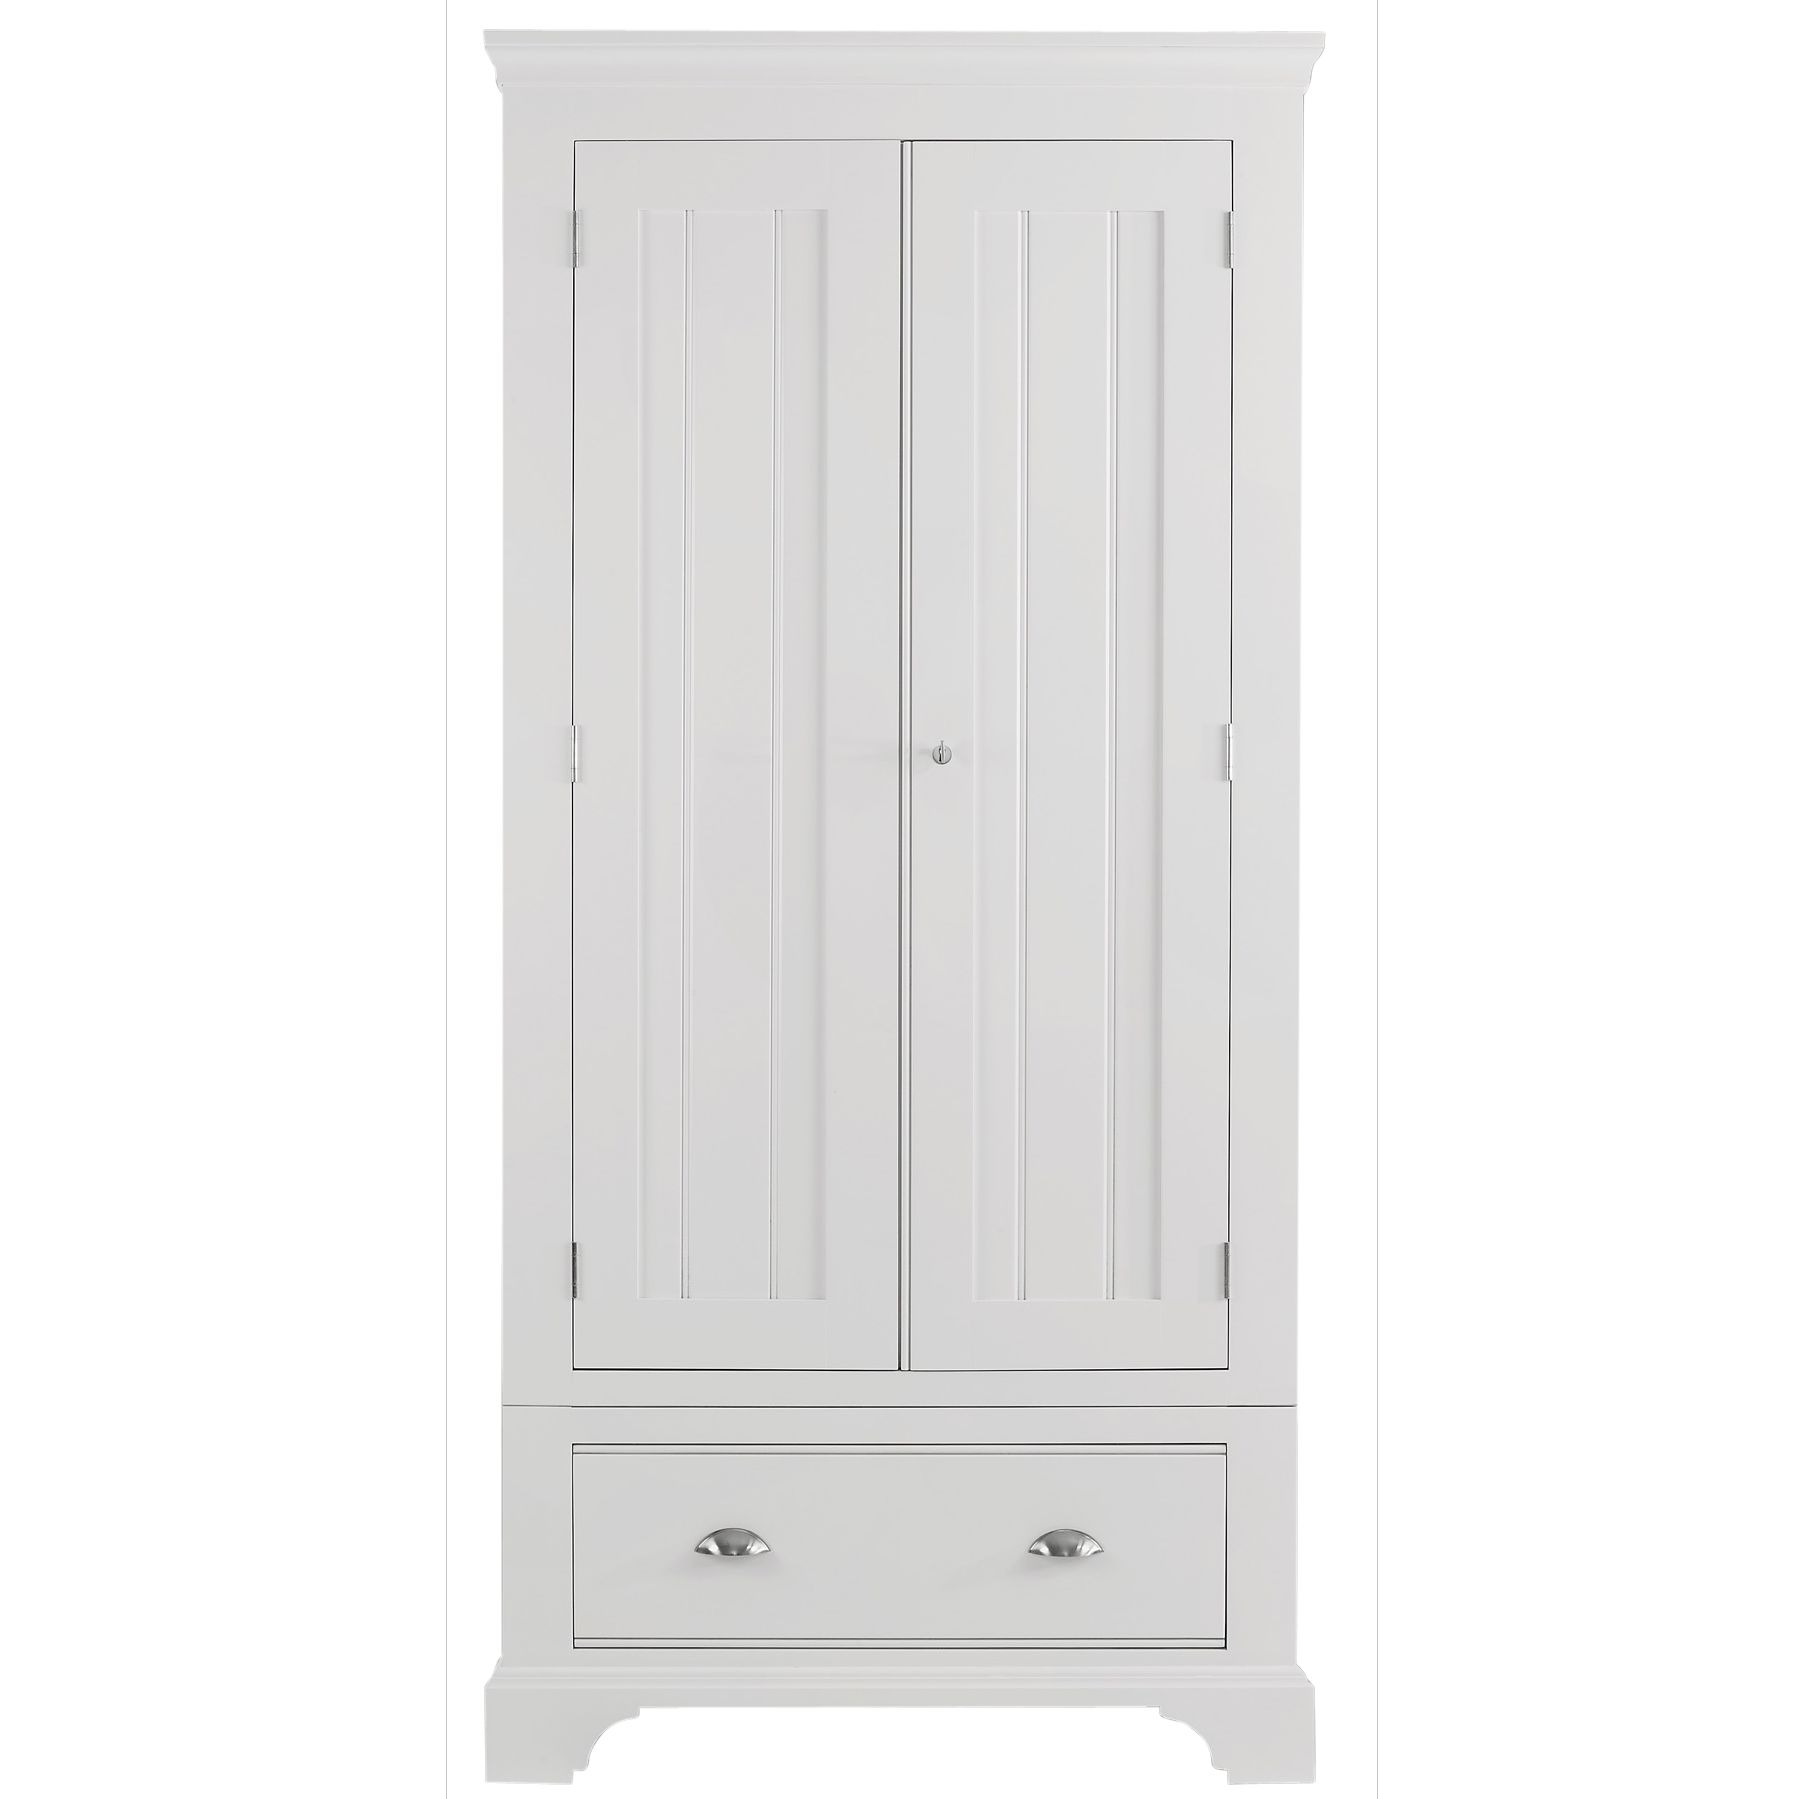 John Lewis Hampton 2 Door 1 Drawer Wardrobe, White at John Lewis